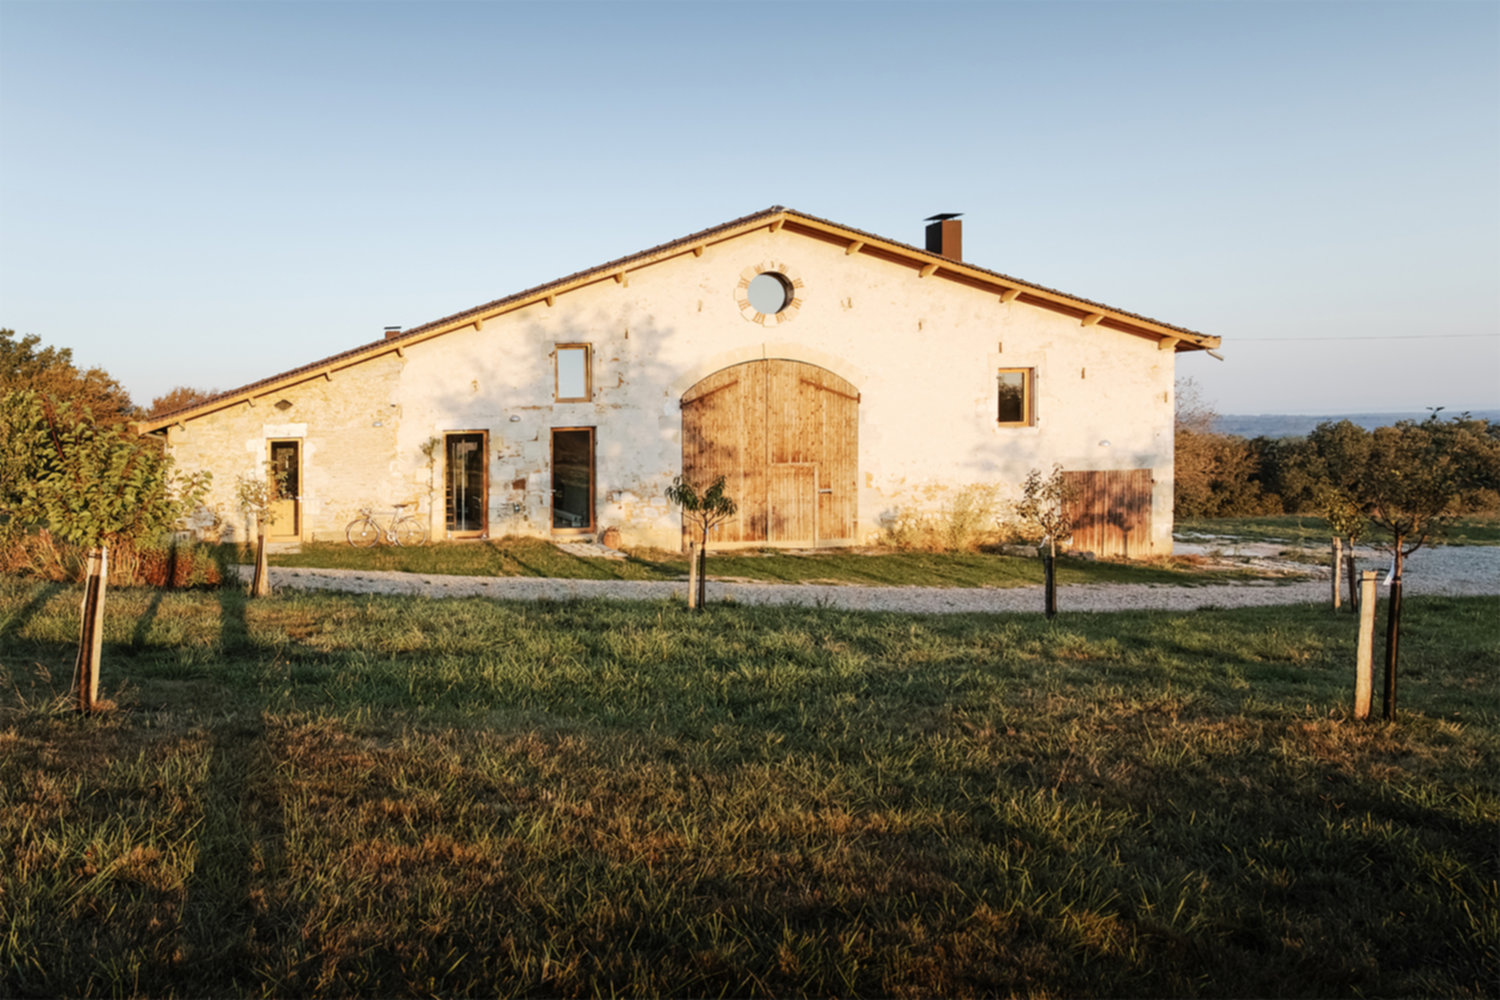 Réaménagement de la ferme Garrelis en Gironde par l'Atelier Boteko - Prix Environnement & Confort 2018 